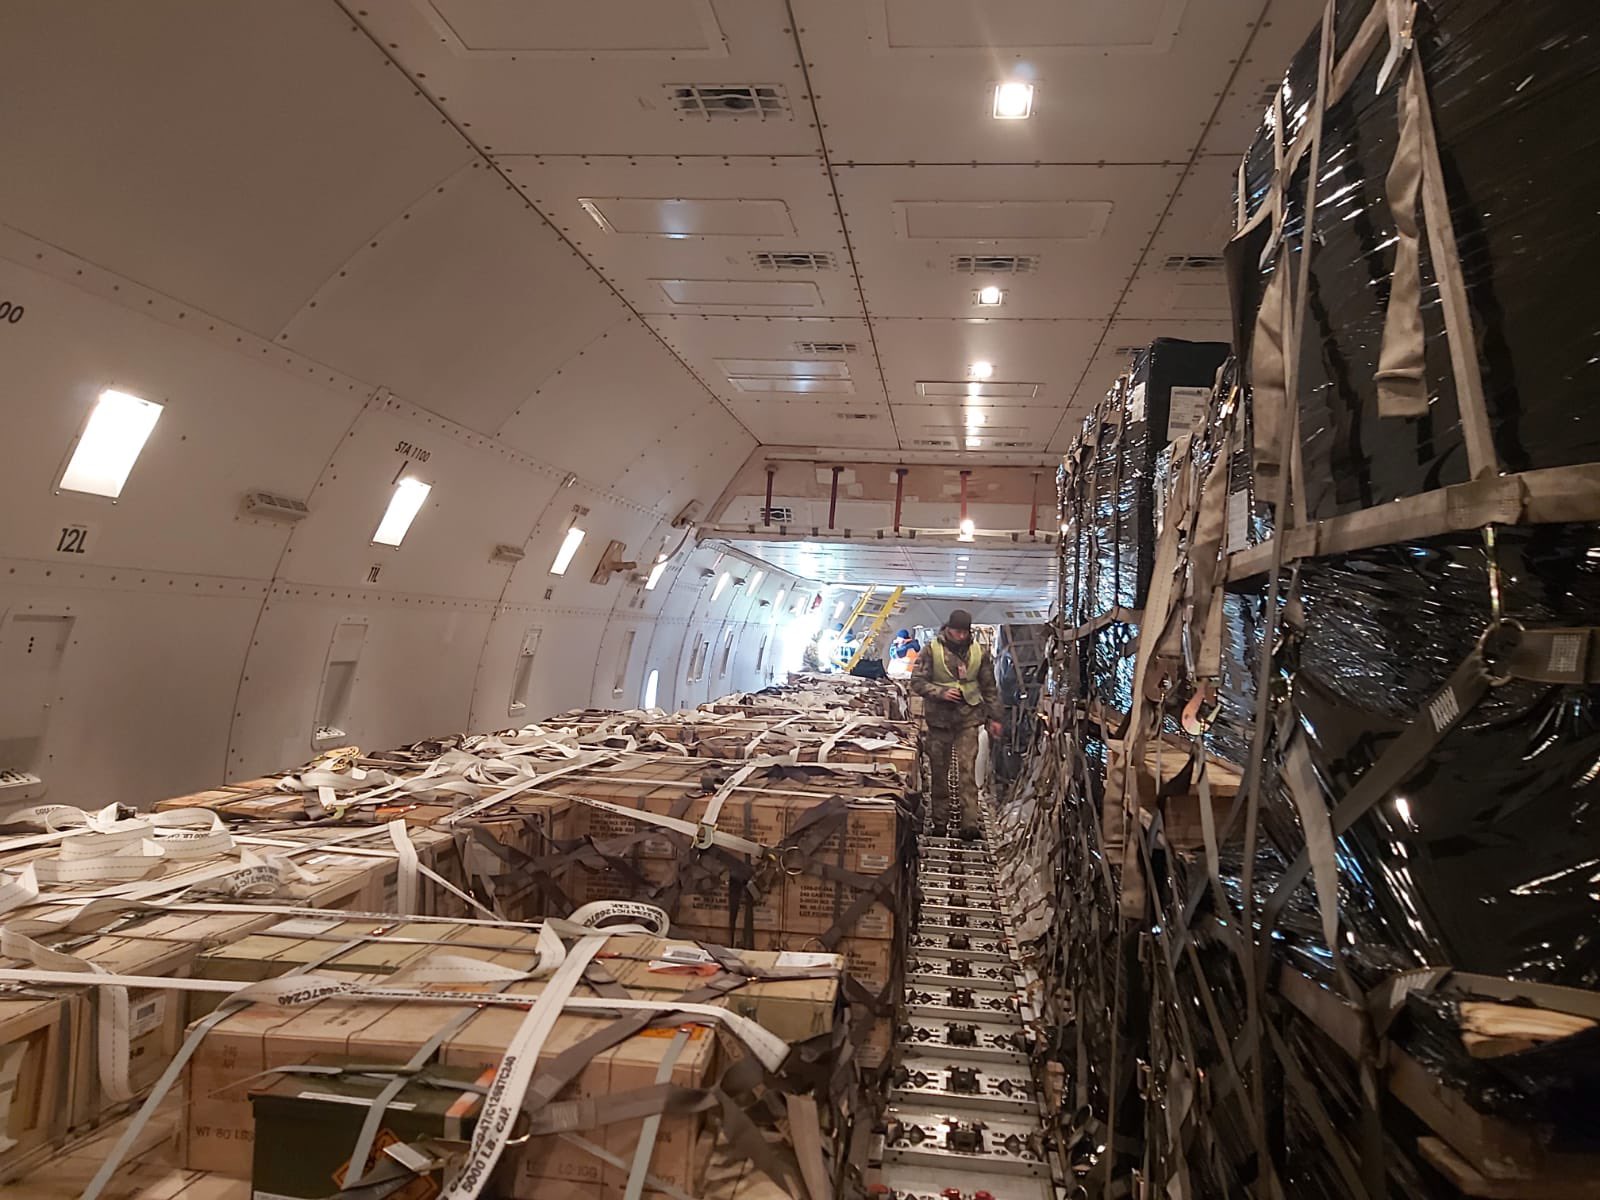 81 тонна боеприпасов. В Украину прибыл четвертый самолет с военной помощью от США – фото